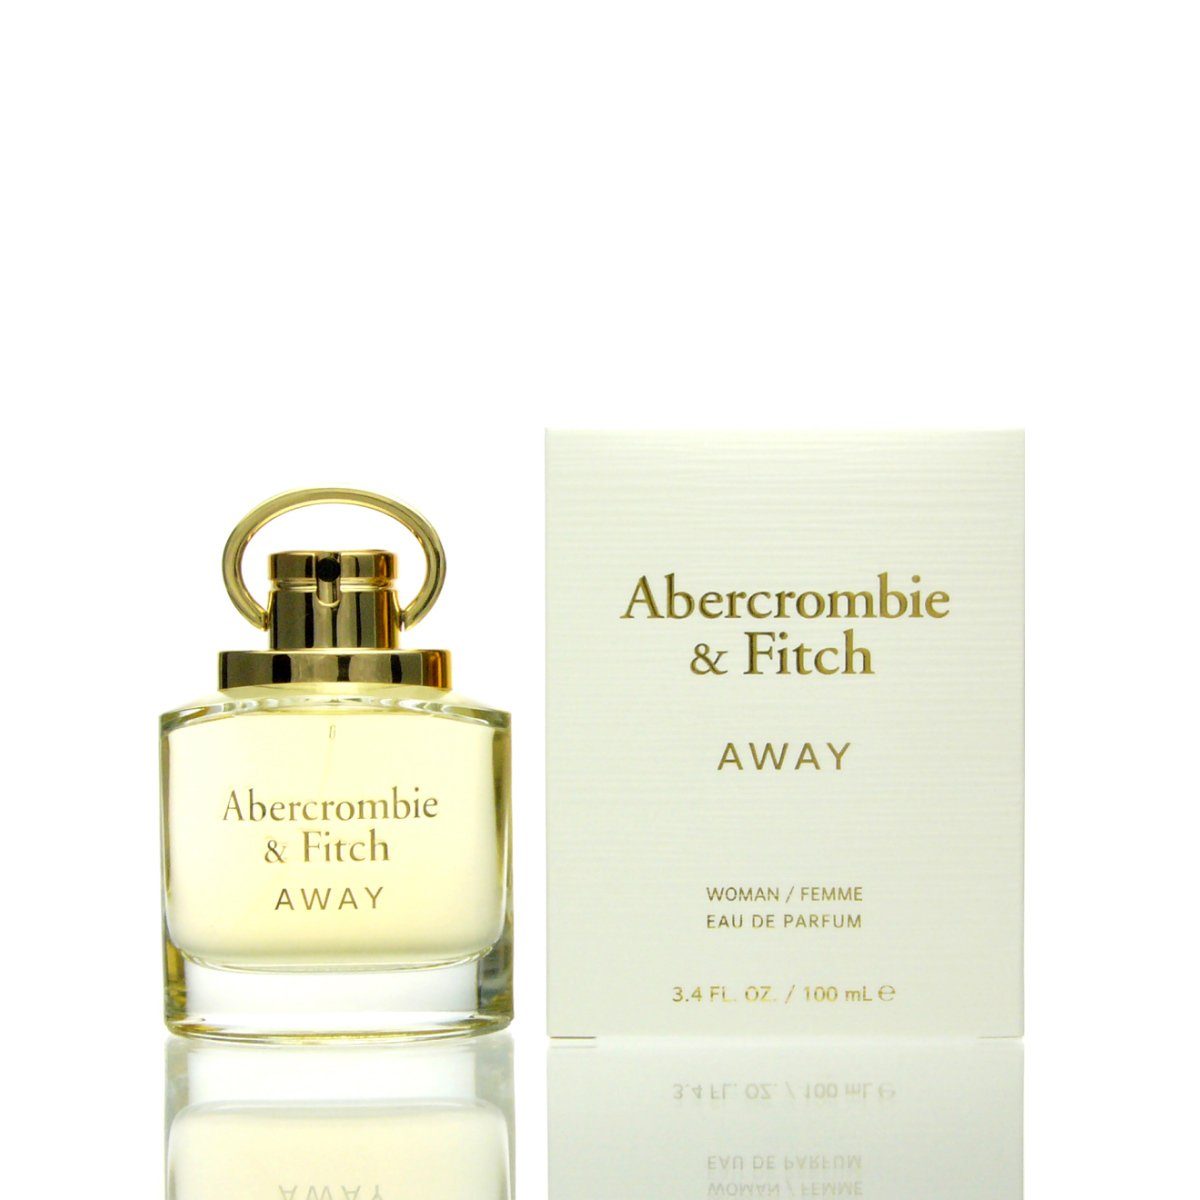 Abercrombie & Fitch Eau de Parfum Abercrombie & Fitch Away for her Eau de Parfum 100 ml